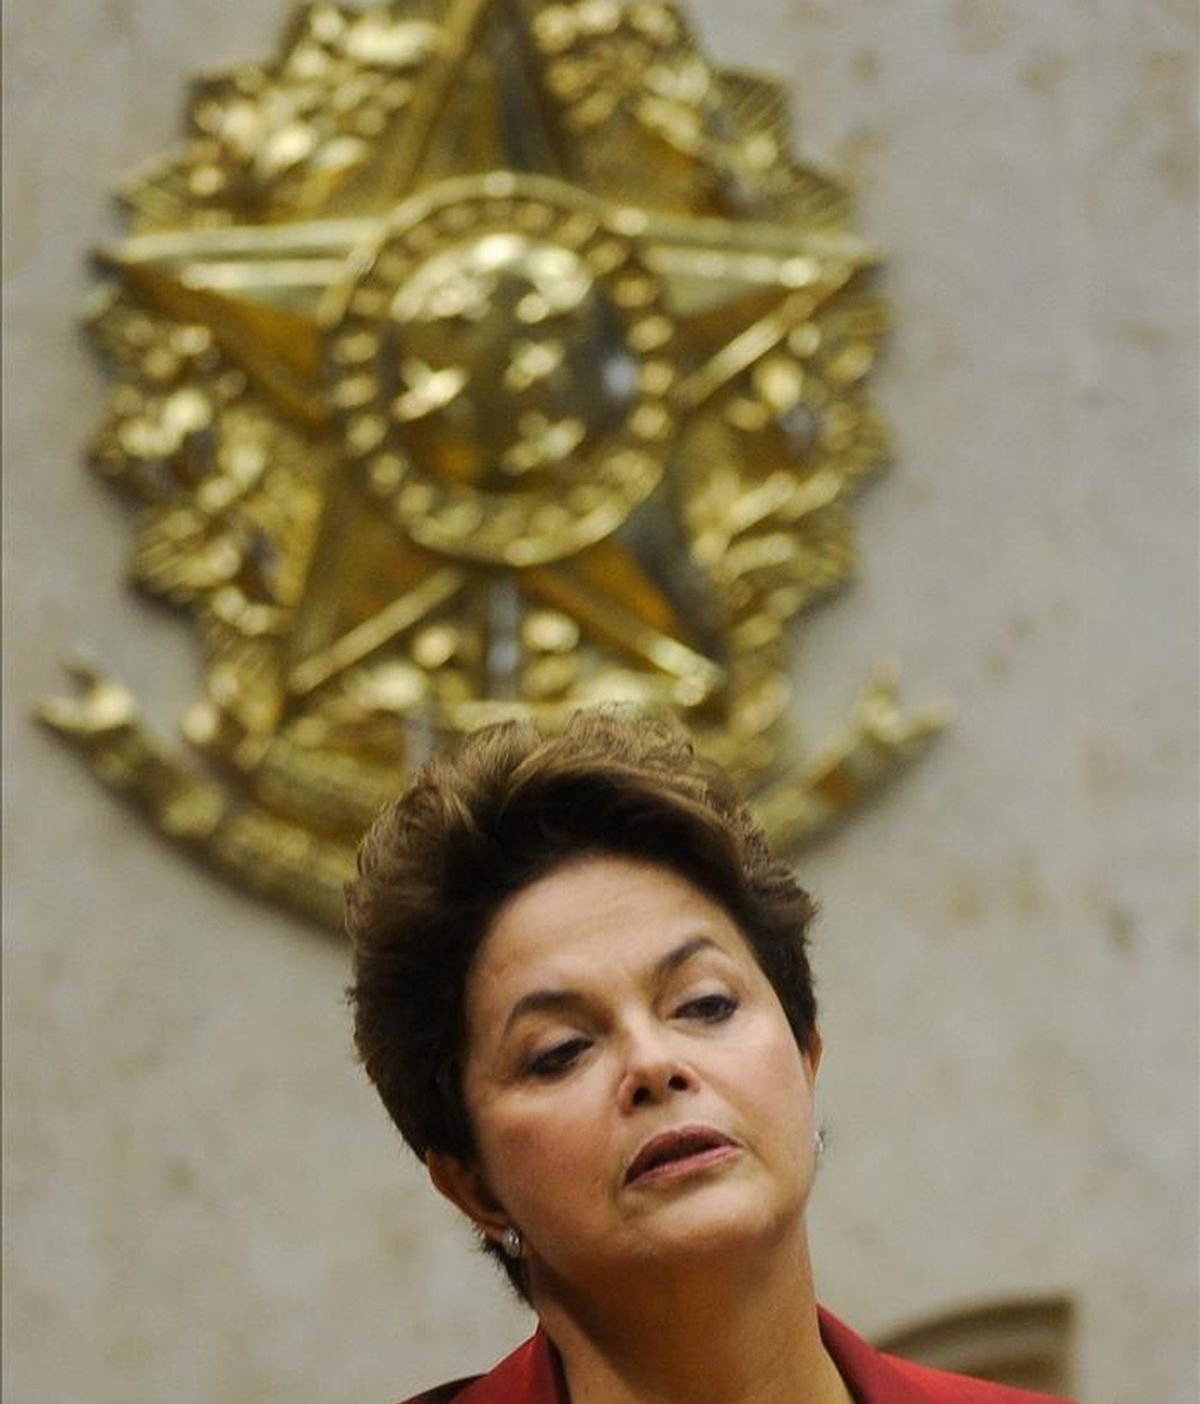 La Presidencia brasileña confirmó hoy la entrevista entre Rousseff y el secretario del Tesoro, cuyo viaje a Brasil es interpretado por la prensa local como una especie de preparación del viaje que Obama hará al país el mes próximo. EFE/Archivo